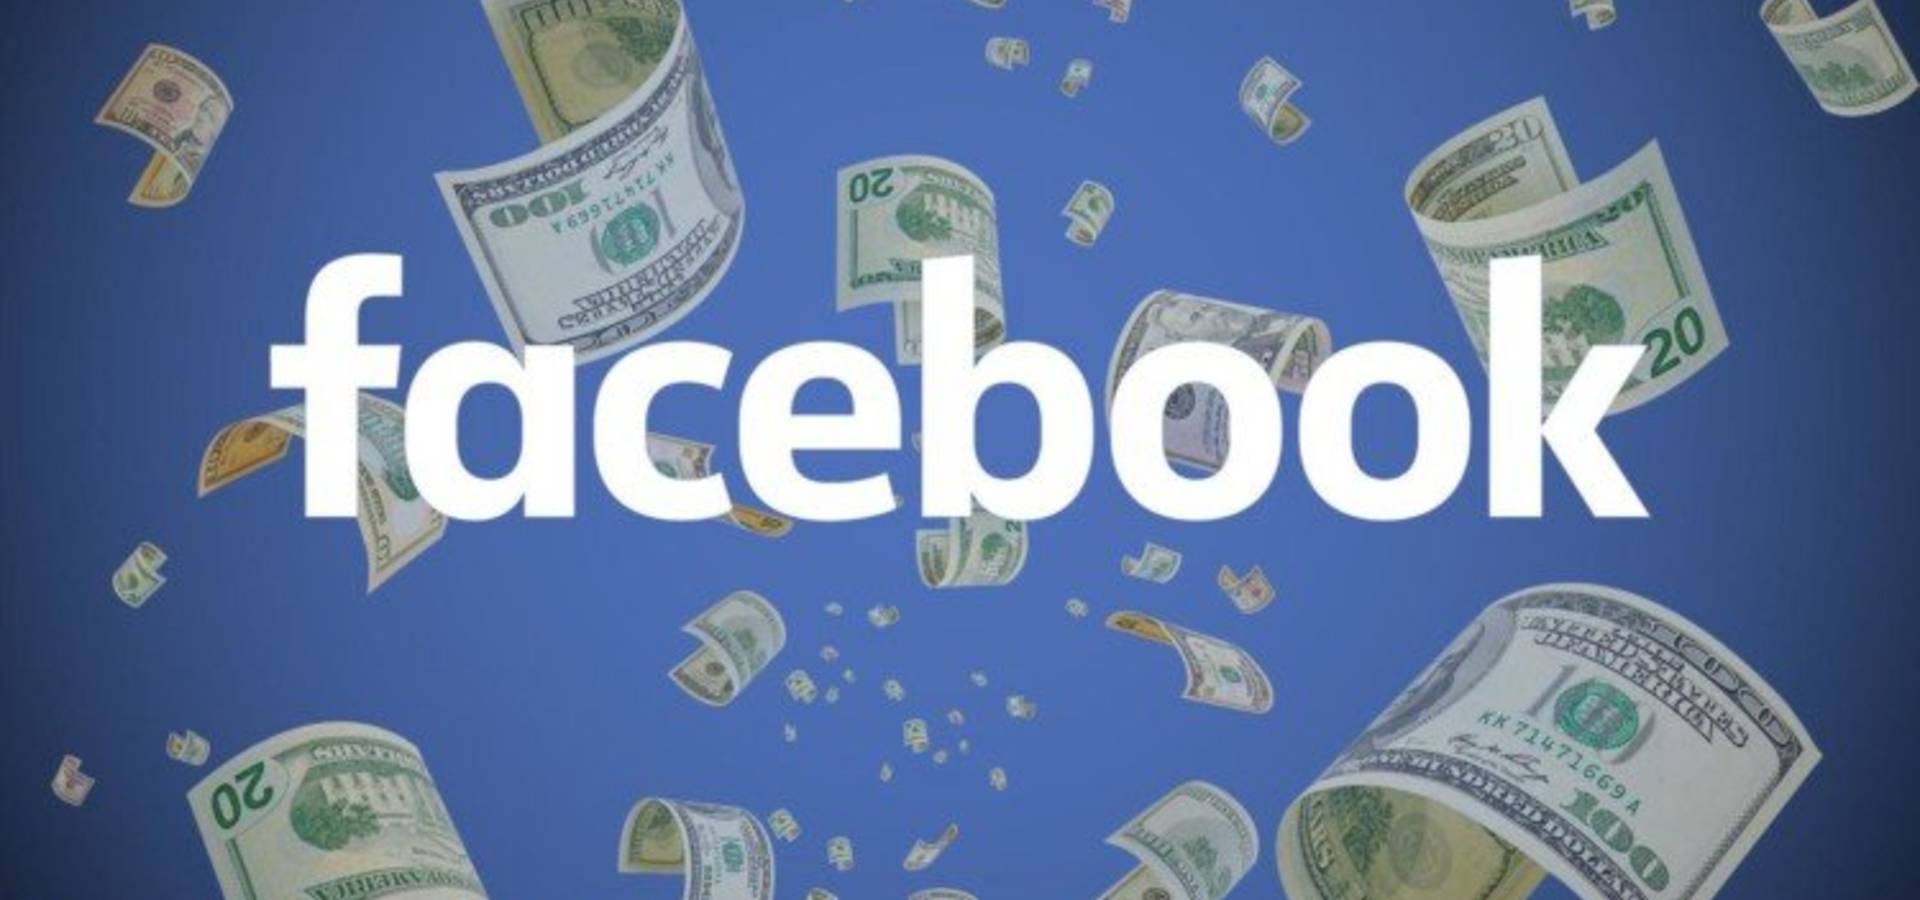 Понад 20 мільйонів гривень витратили на рекламу у Фейсбук  українські політики